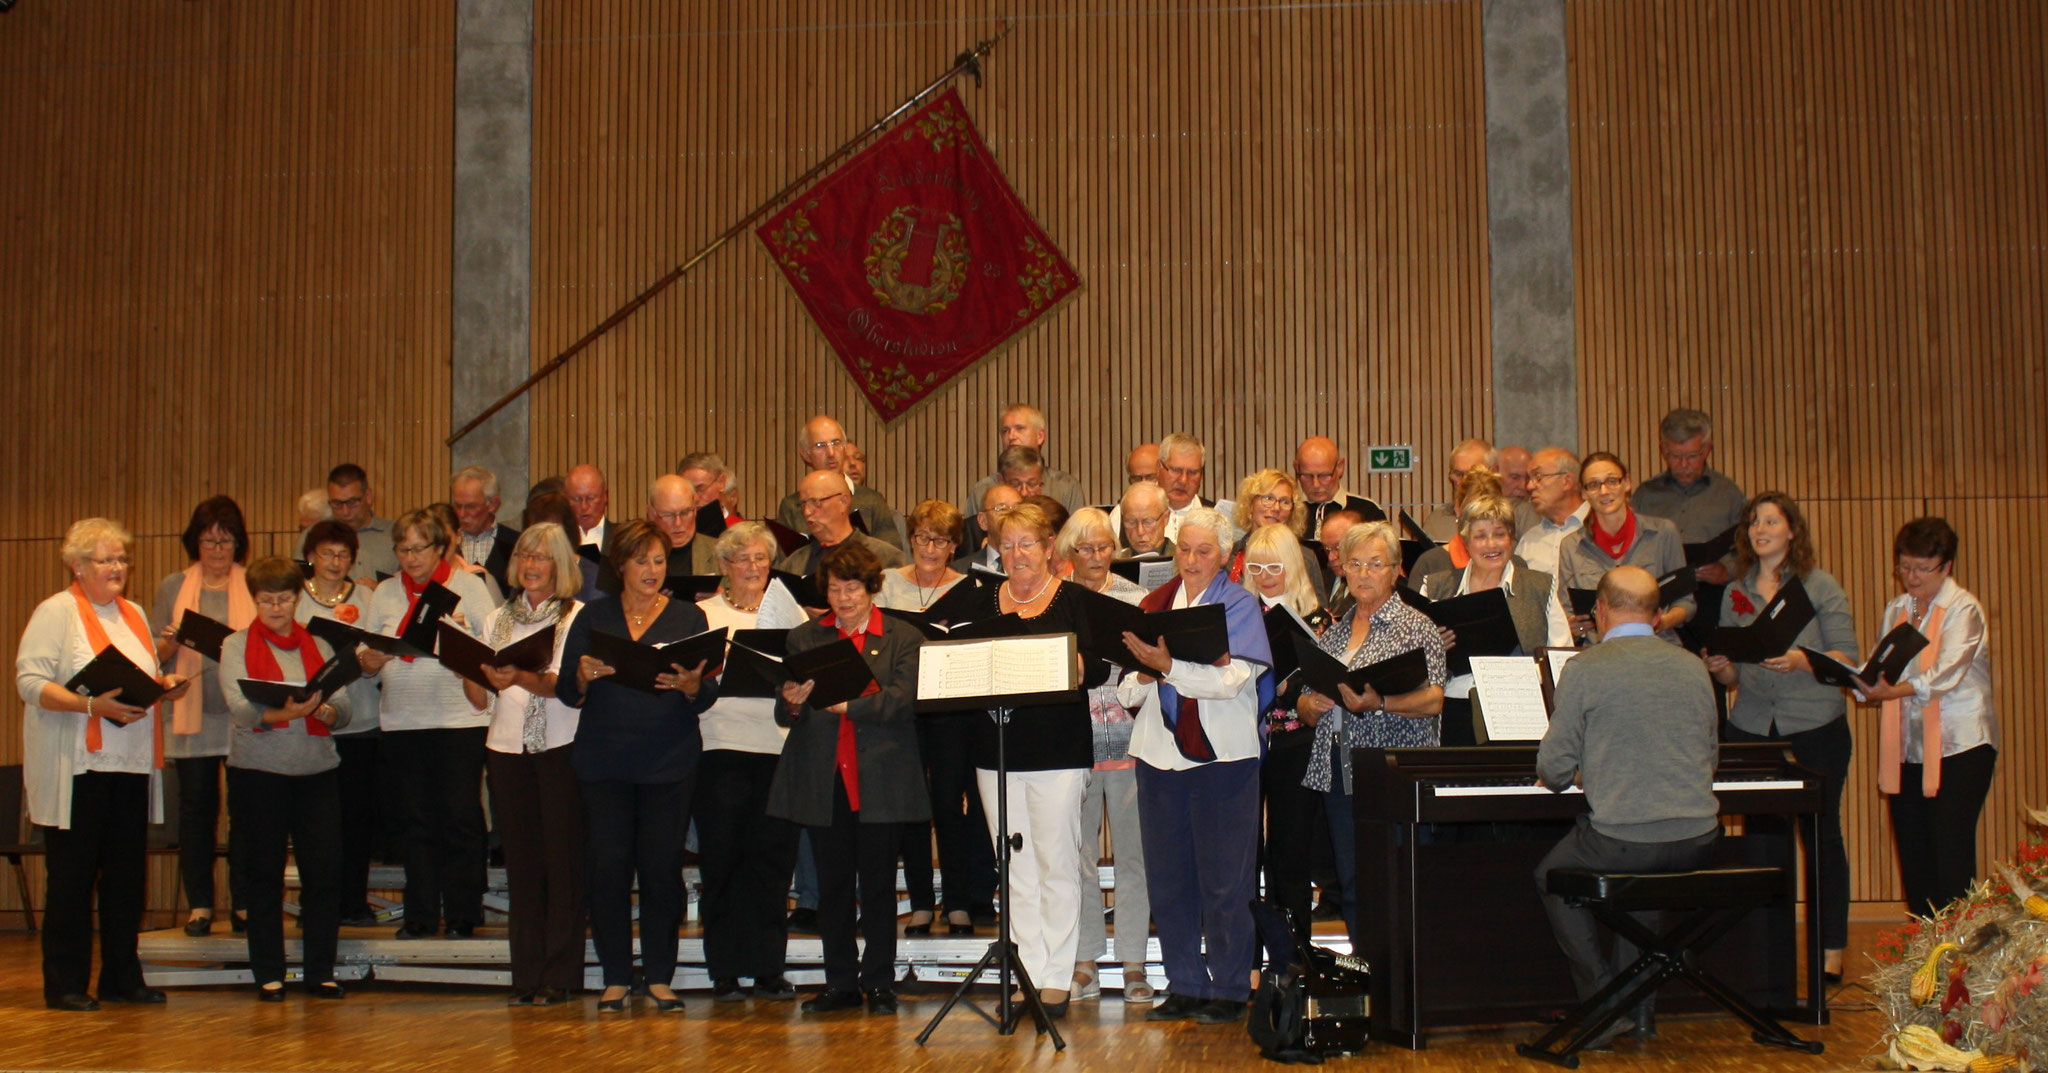 Gemeinschaftschor "Liedertafel Ehingen" mit "Liederkranz Kirchen" mit Ihr von morgen